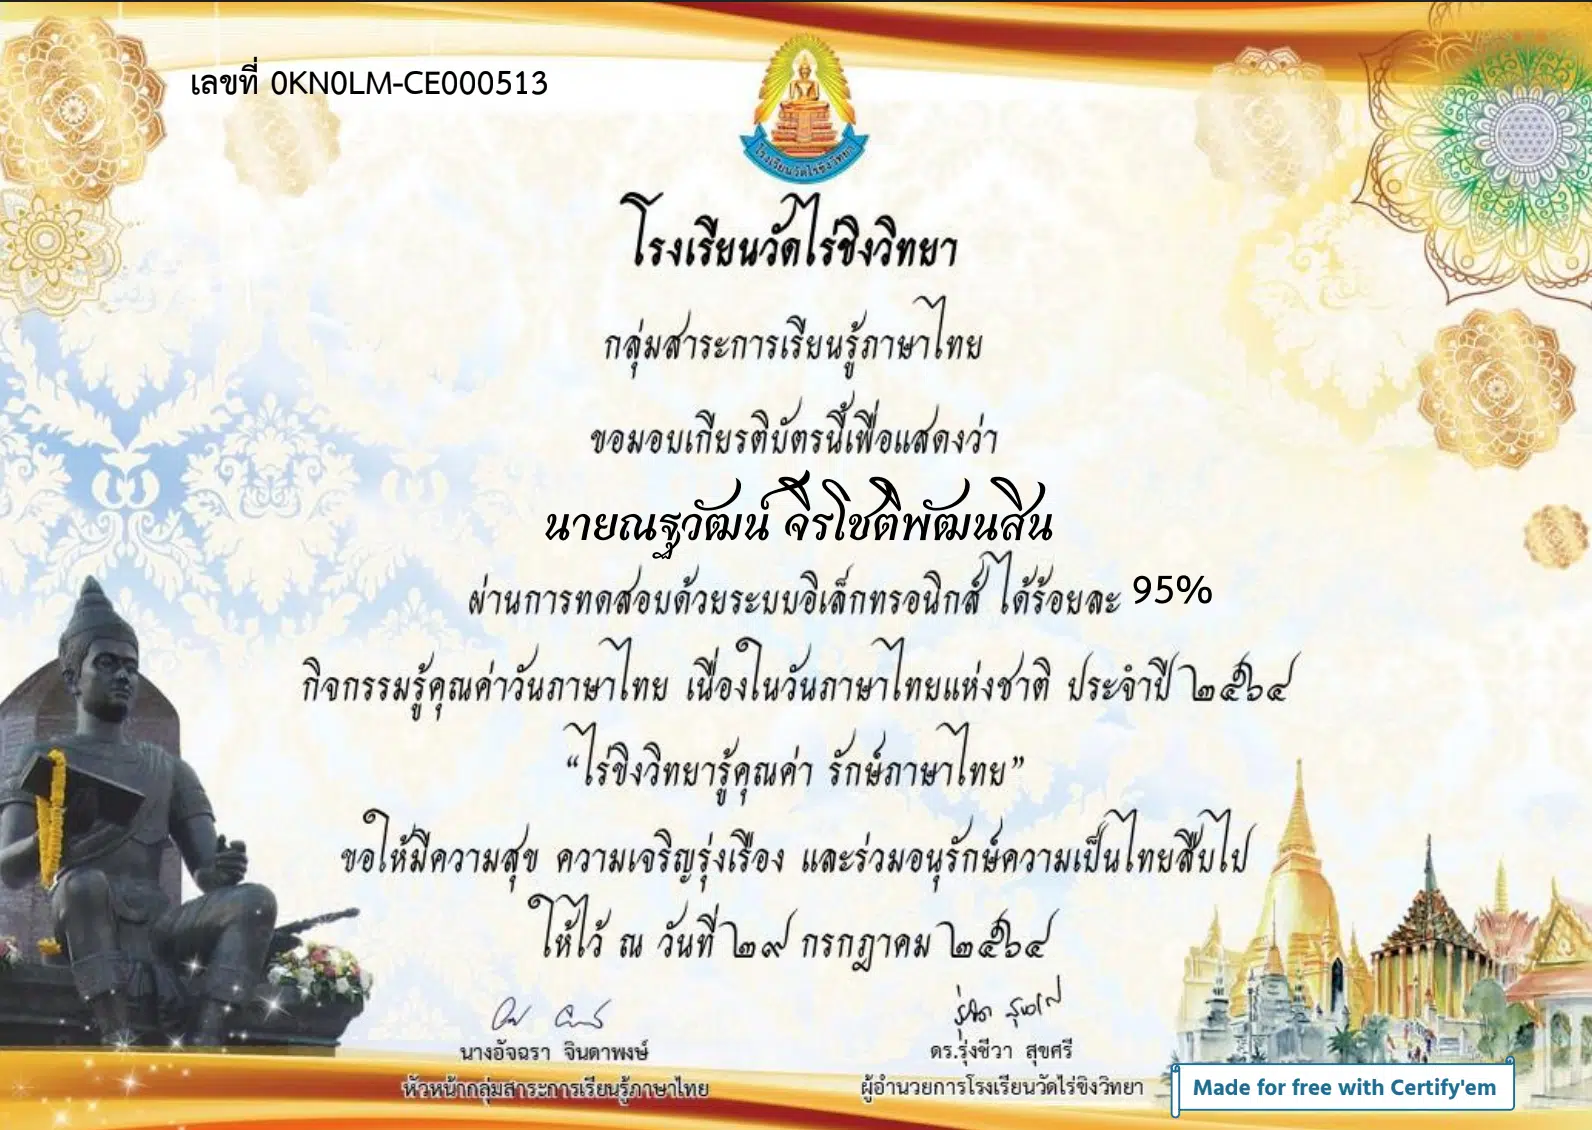 แบบทดสอบออนไลน์ เนื่องในวันภาษาไทยเเห่งชาติ 2564 กิจกรรม รู้คุณค่า รักษ์ภาษาไทย ผ่านเกณฑ์ร้อยละ 80 รับเกียรติบัตรทางE-Mail โดยกลุ่มสาระการเรียนรู้ภาษาไทย โรงเรียนวัดไร่ขิงวิทยา